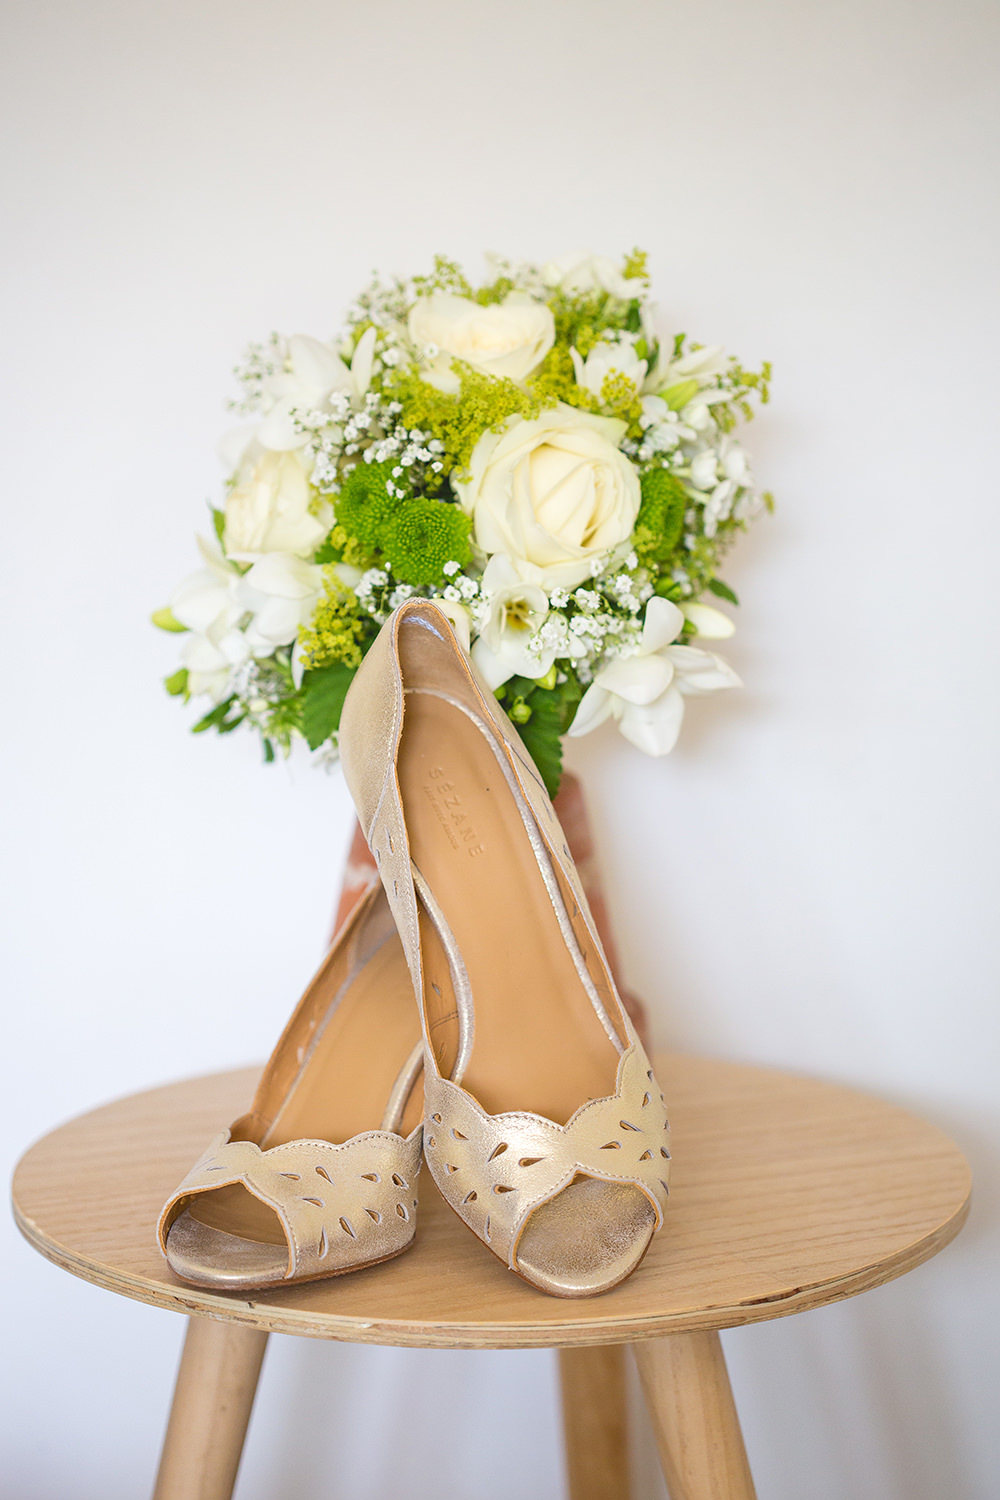 Chaussures et bouquet